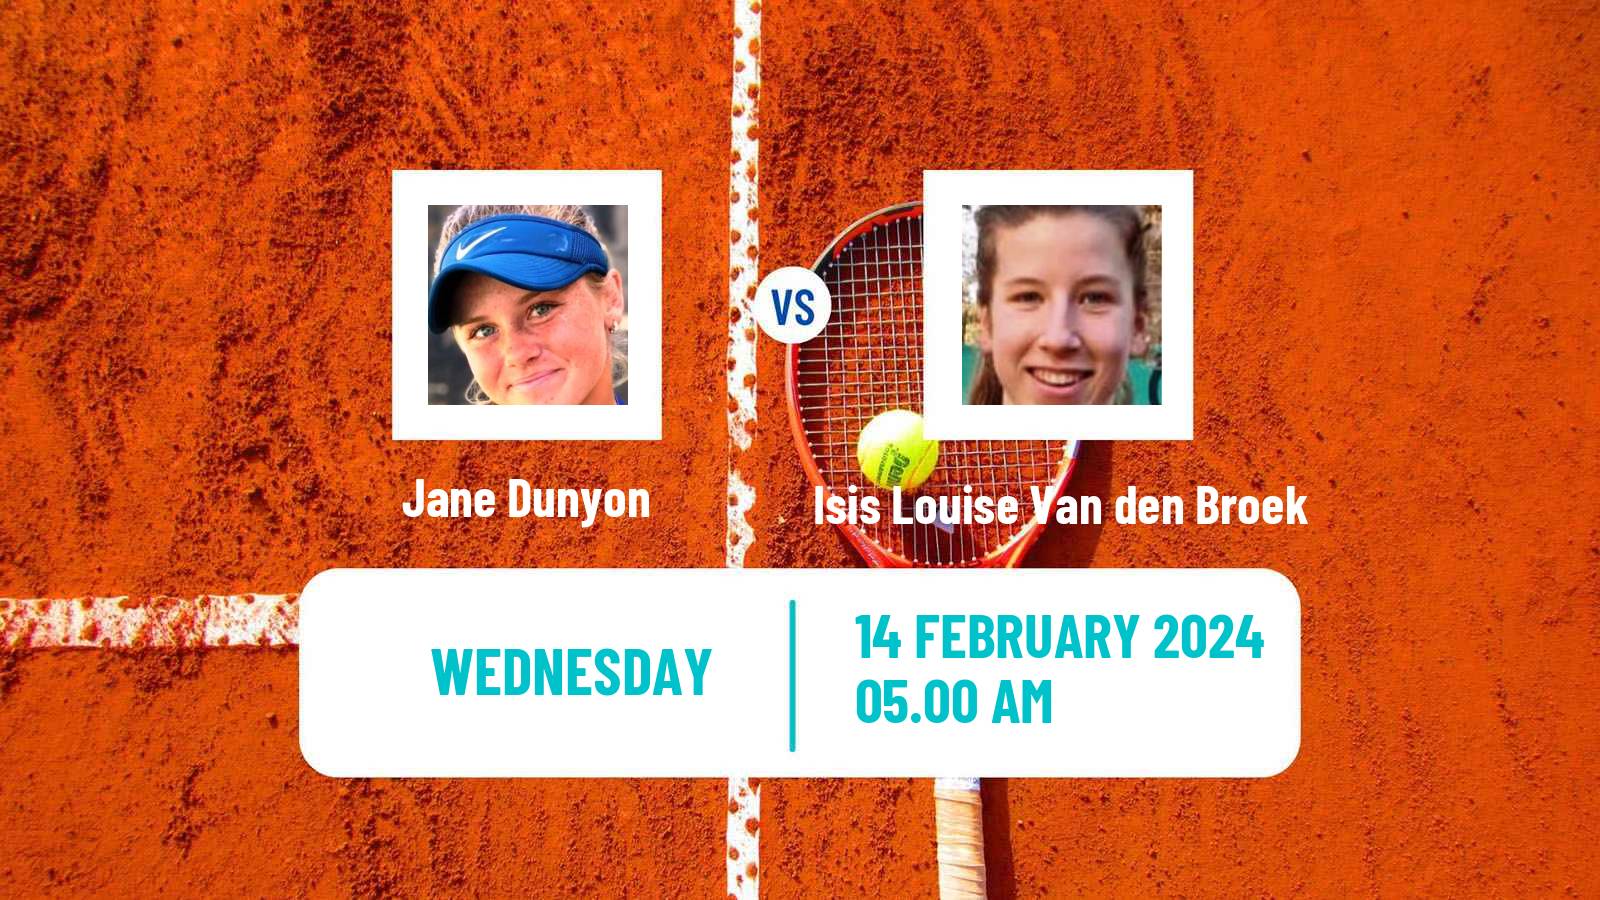 Tennis ITF W15 Sharm Elsheikh 2 Women Jane Dunyon - Isis Louise Van den Broek